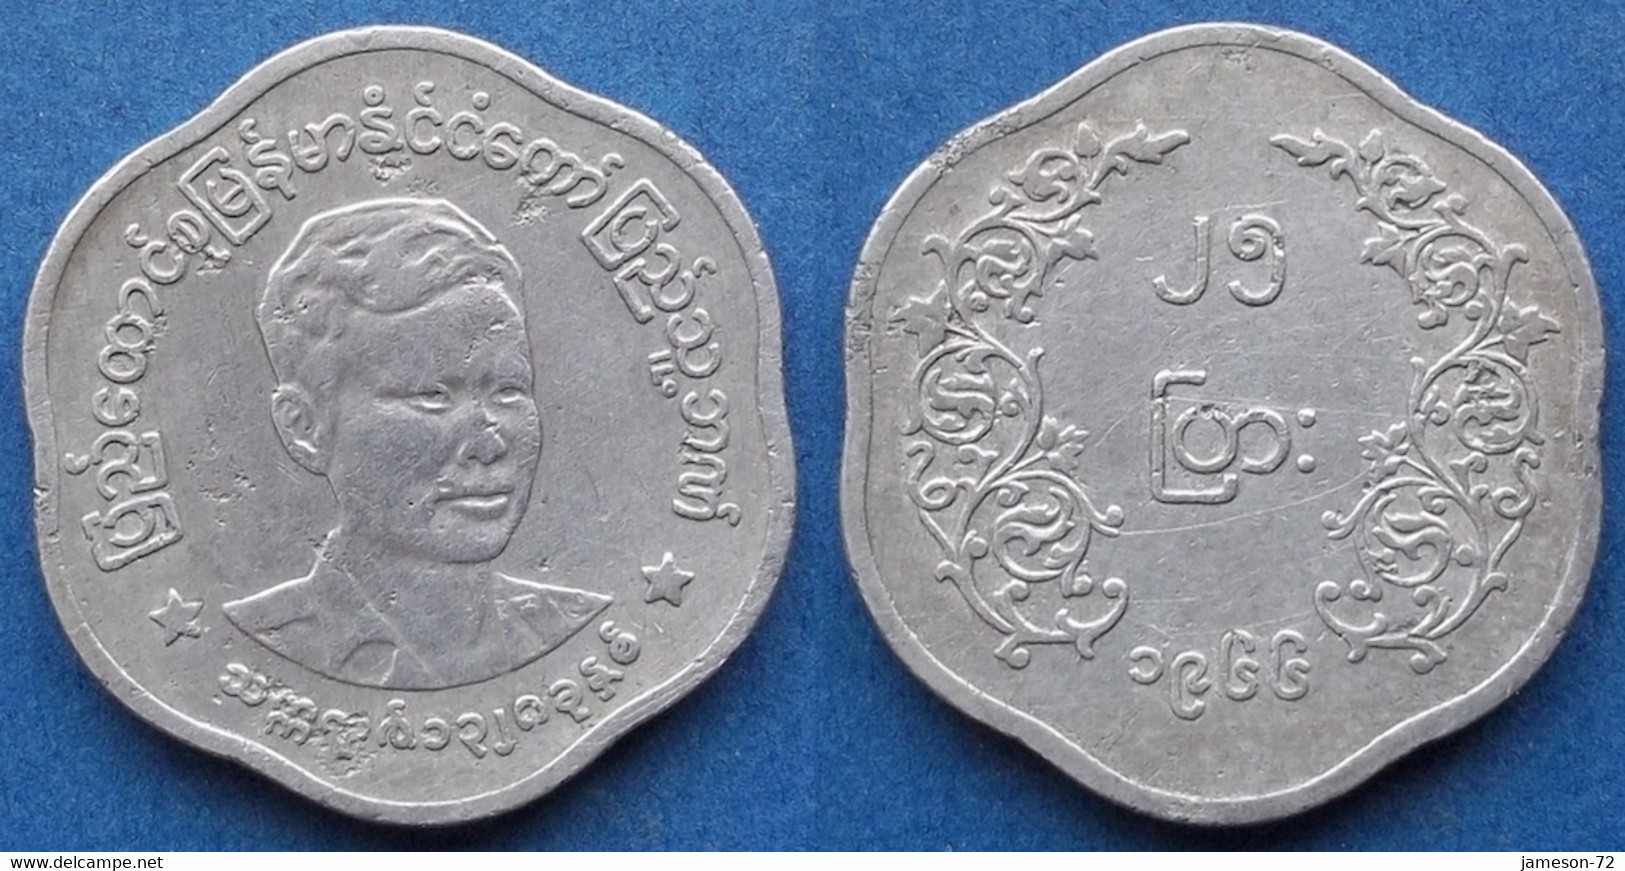 BURMA - 25 Pyas 1966 KM# 41 Republic (1948-1989) - Edelweiss Coins - Birmania